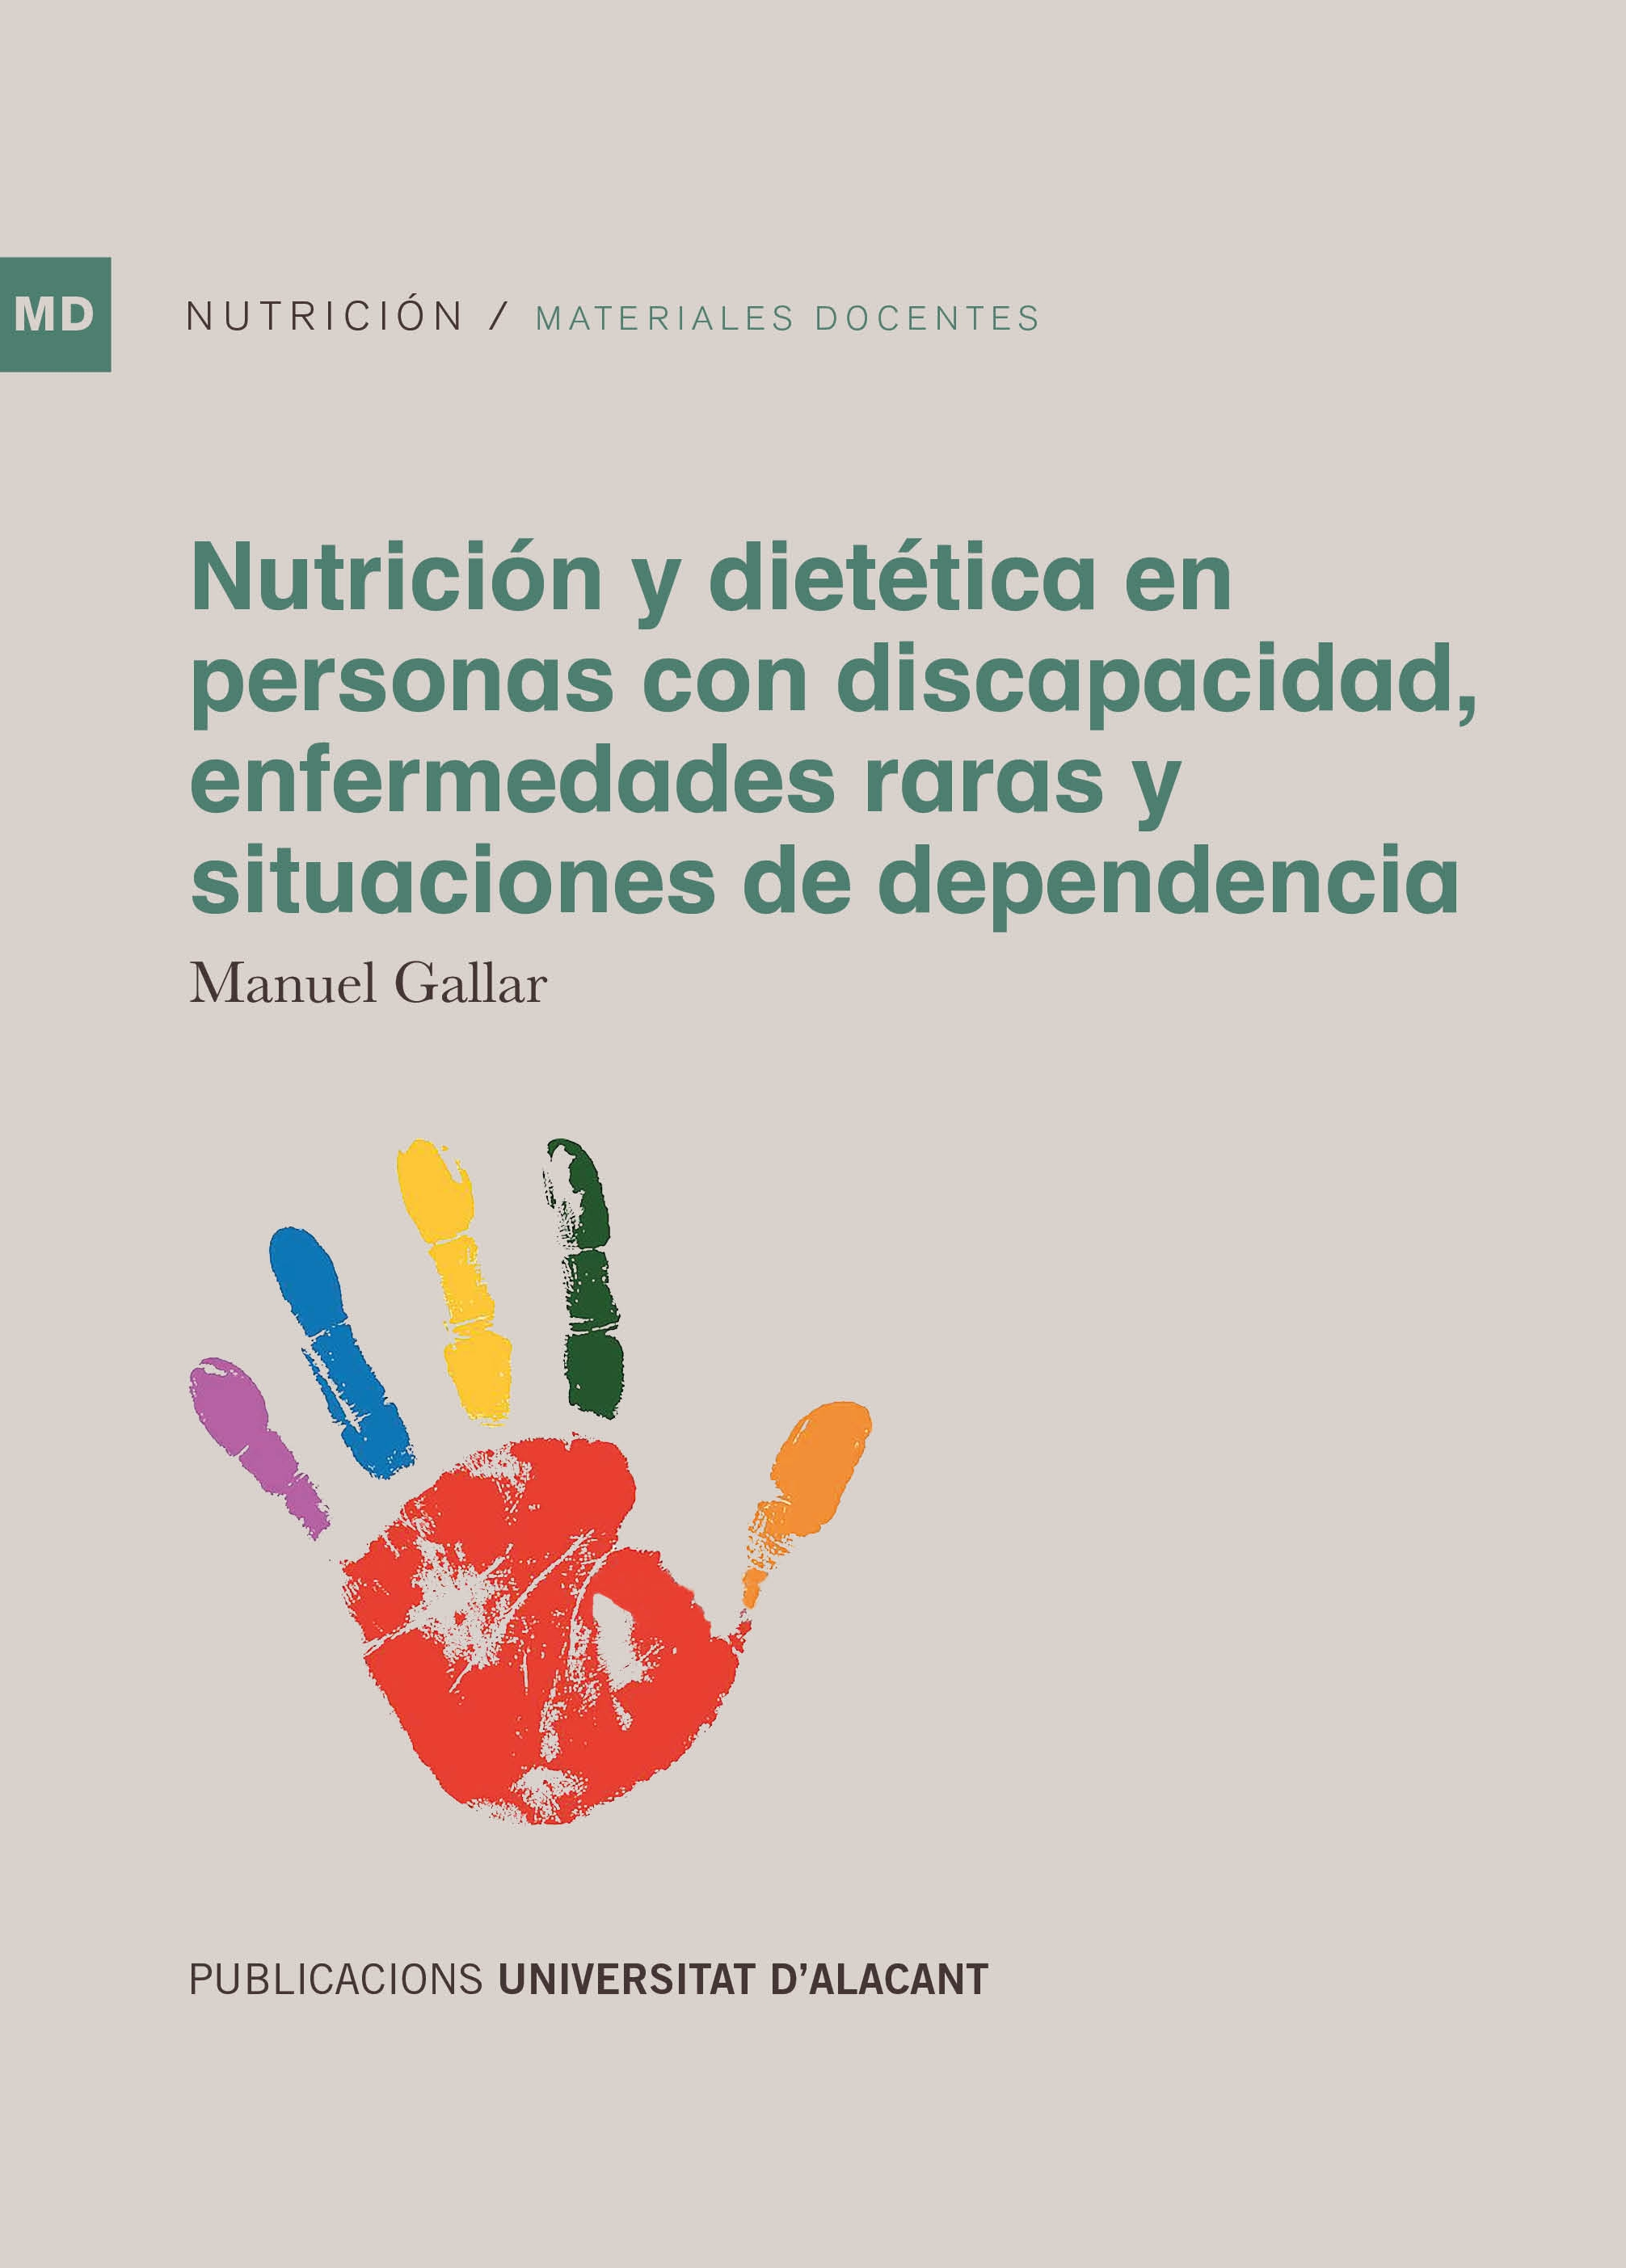 NutriciÃ³n y dietÃ©tica en personas con discapacidad, enfermedades raras y situaciones de dependencia